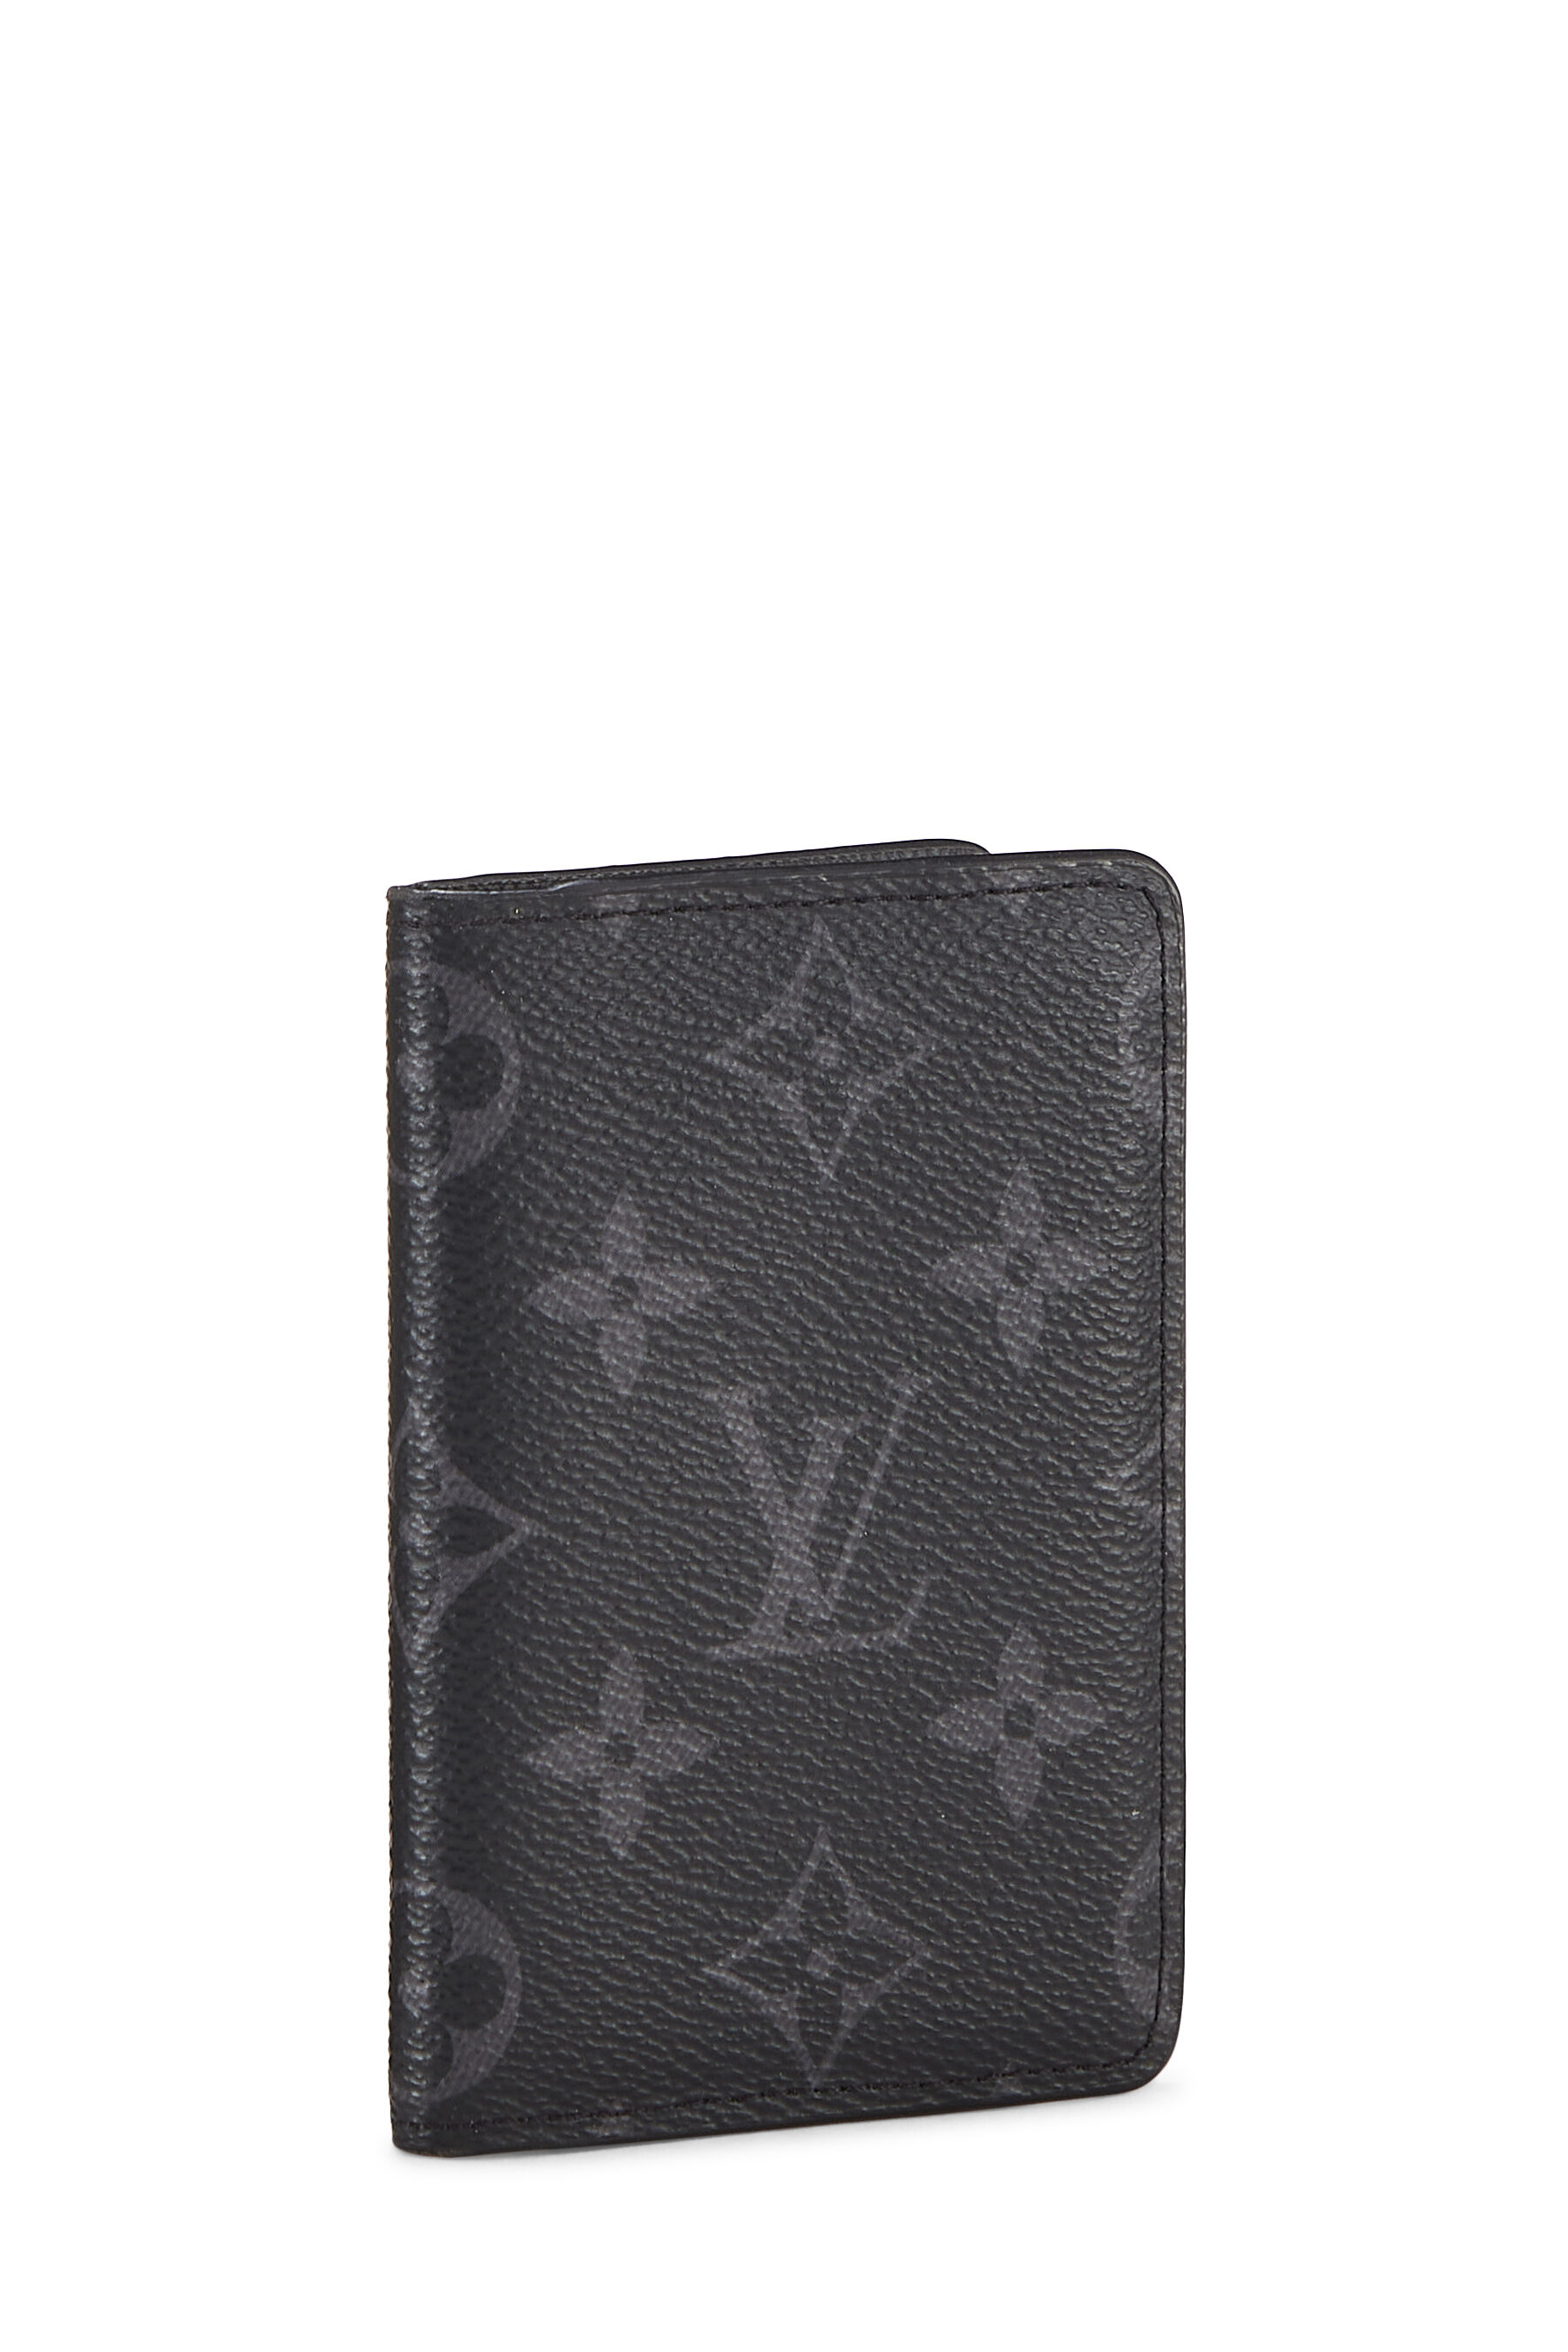 BRAND NEW LOUIS Vuitton Pocket Organizer Monogram Eclipse Black